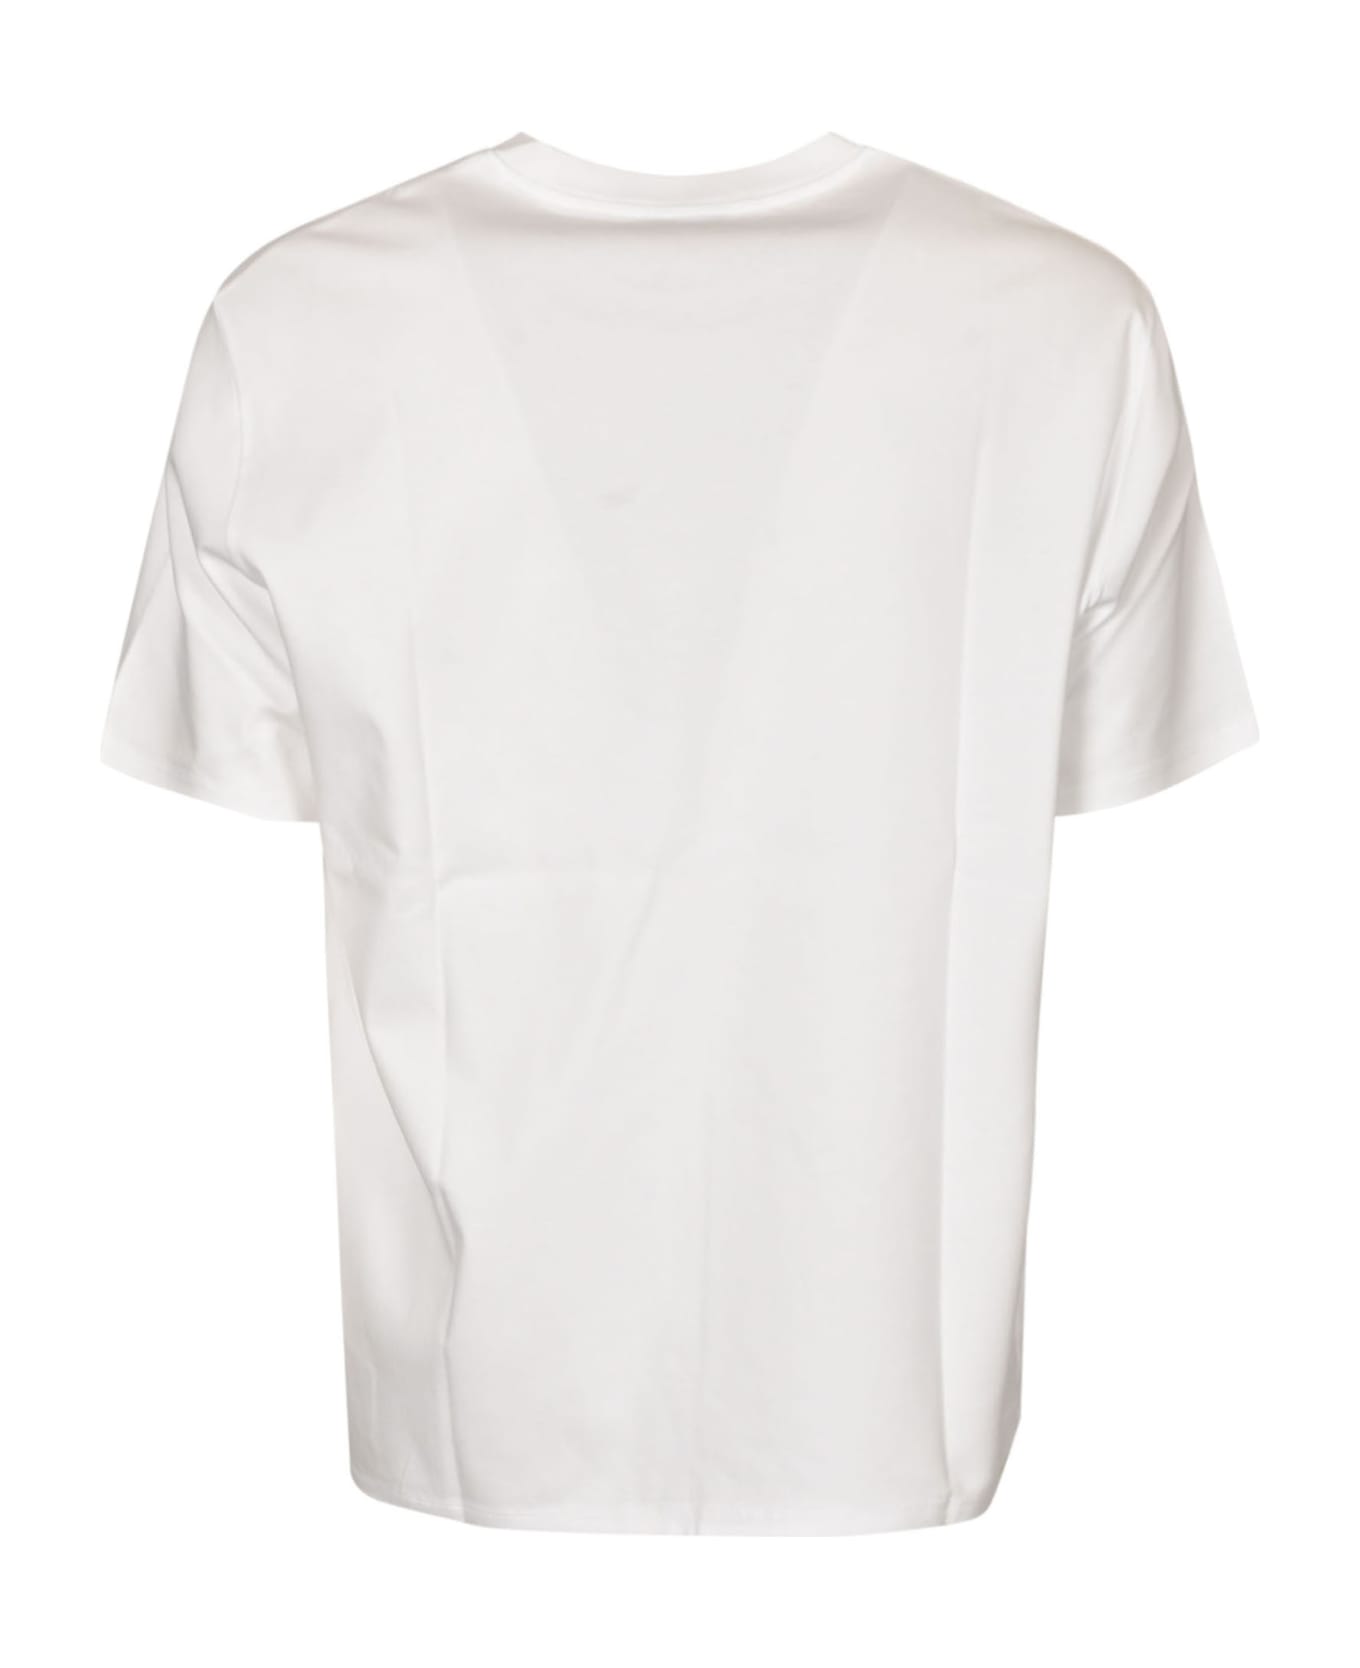 Lanvin Chest Logo Plain T-shirt - White シャツ